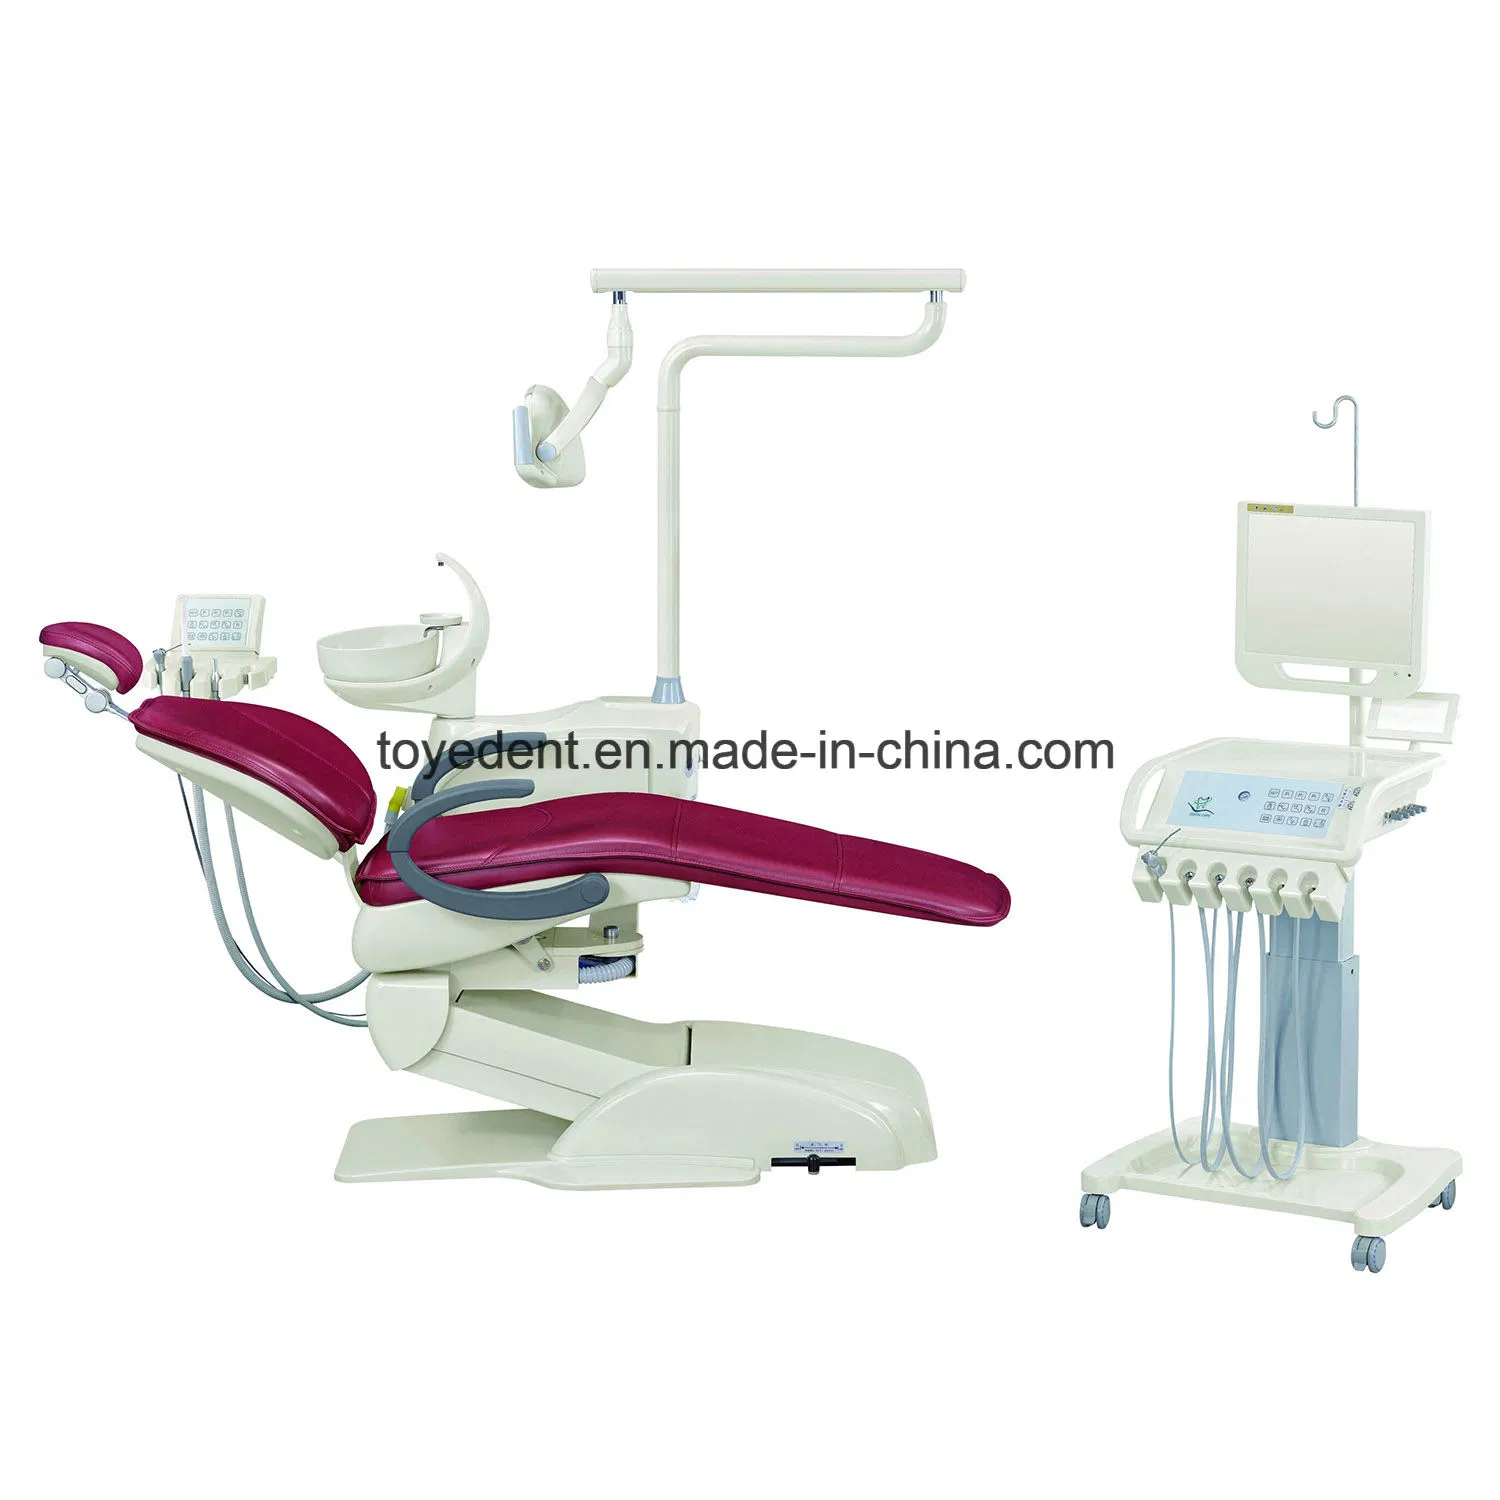 La personalización básica 1% de descuento en el mejor precio al por mayor Venta de silla de la Unidad Dental Clínica Dental el equipo de producto de lujo presidente